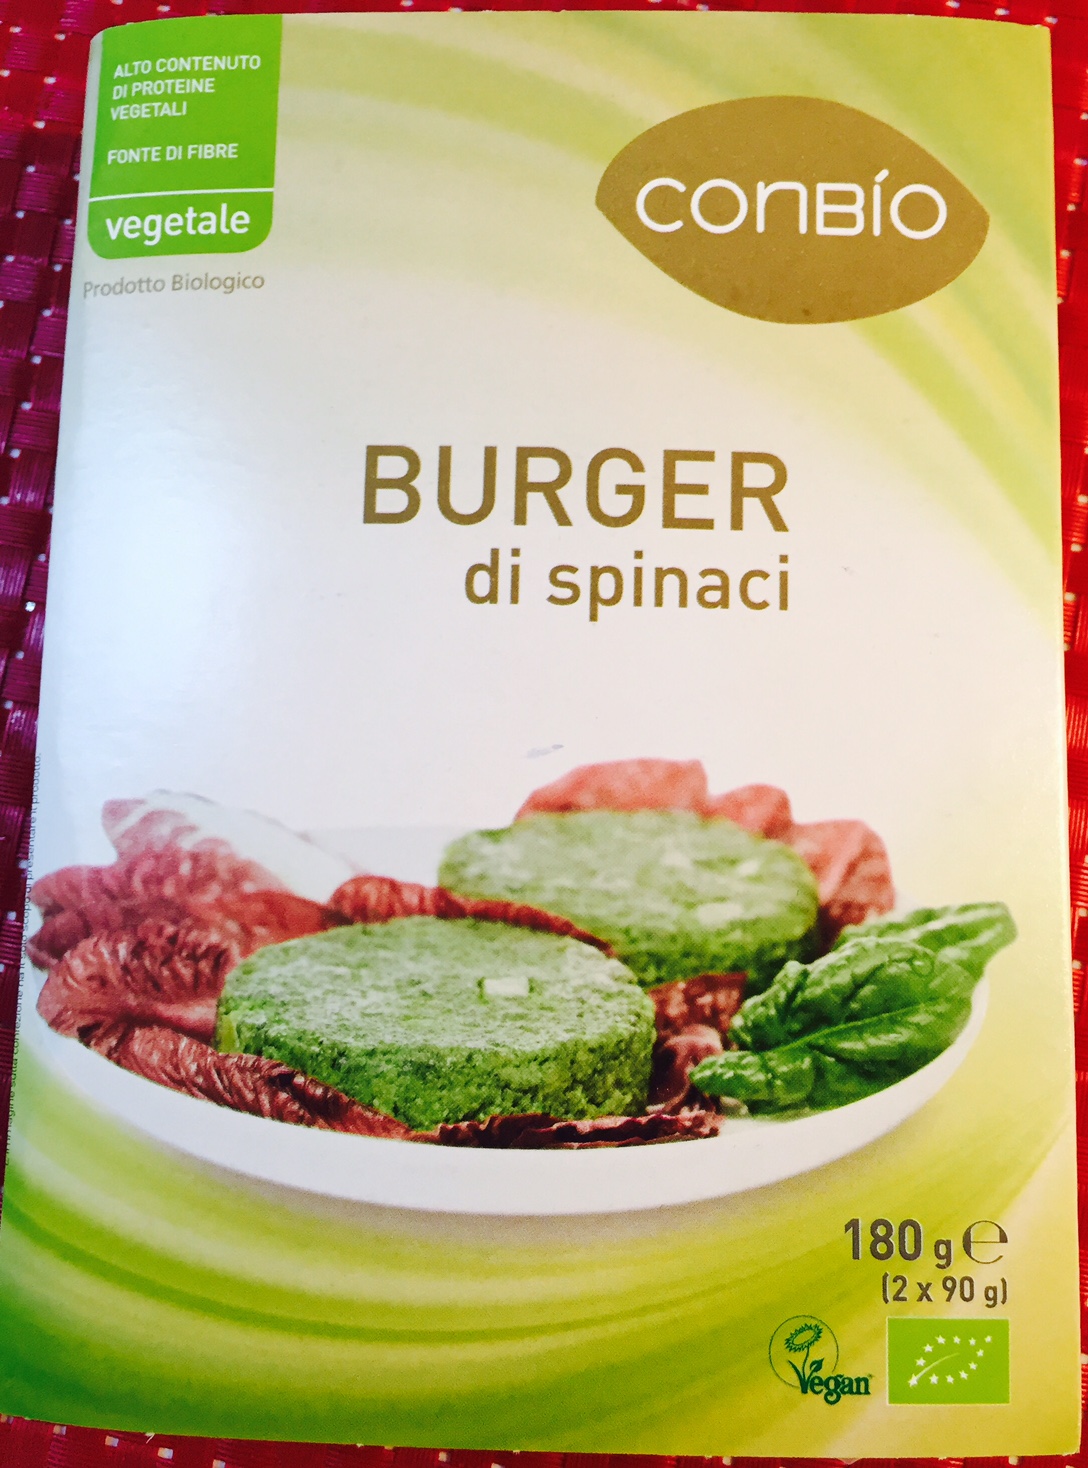 Burger di spinaci Conbio - lattosio 0% Image